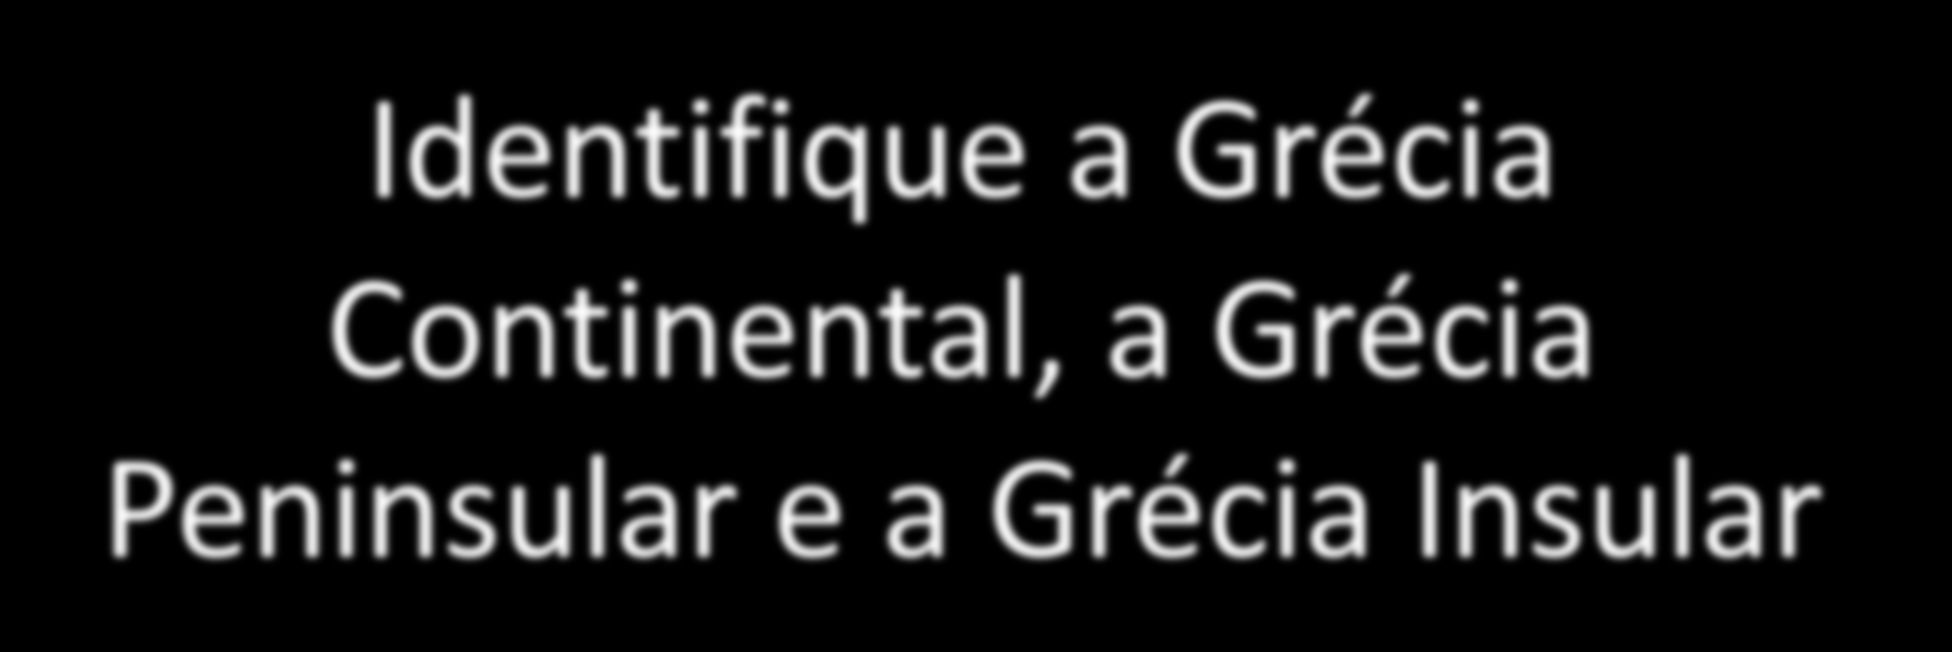 Identifique a Grécia Continental, a